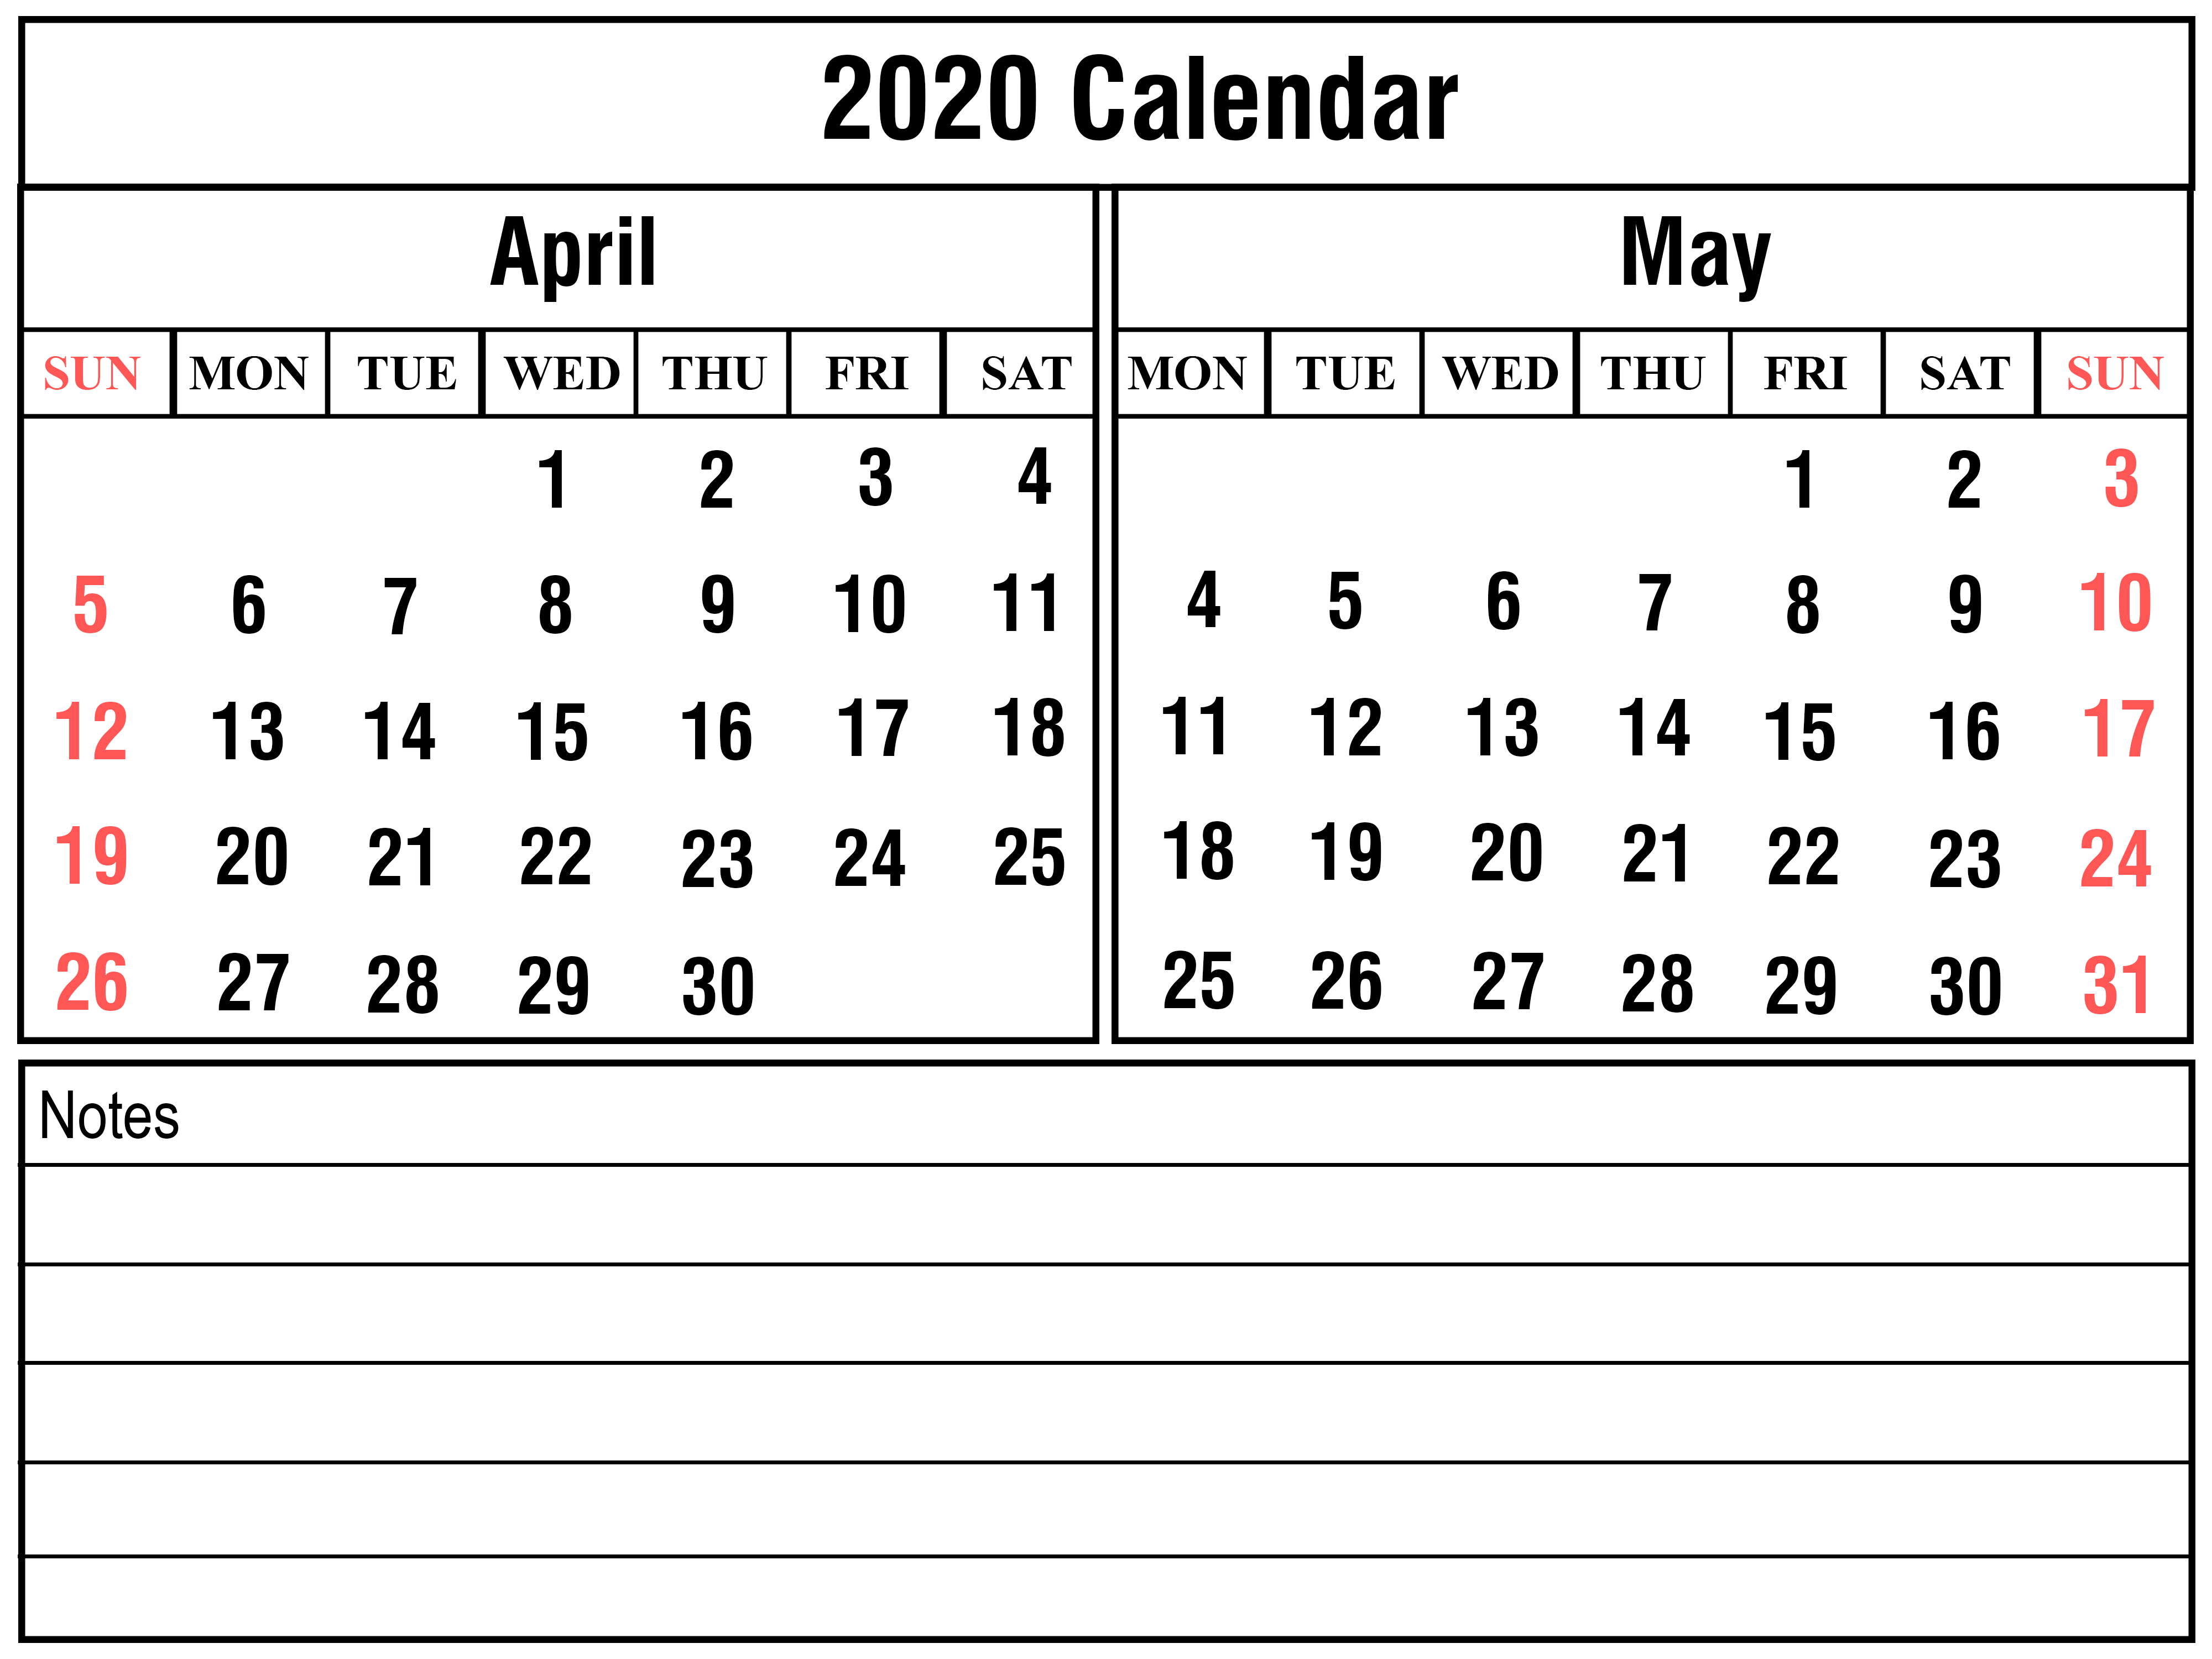 April 2020 Calendar | Printable April Calendar Template